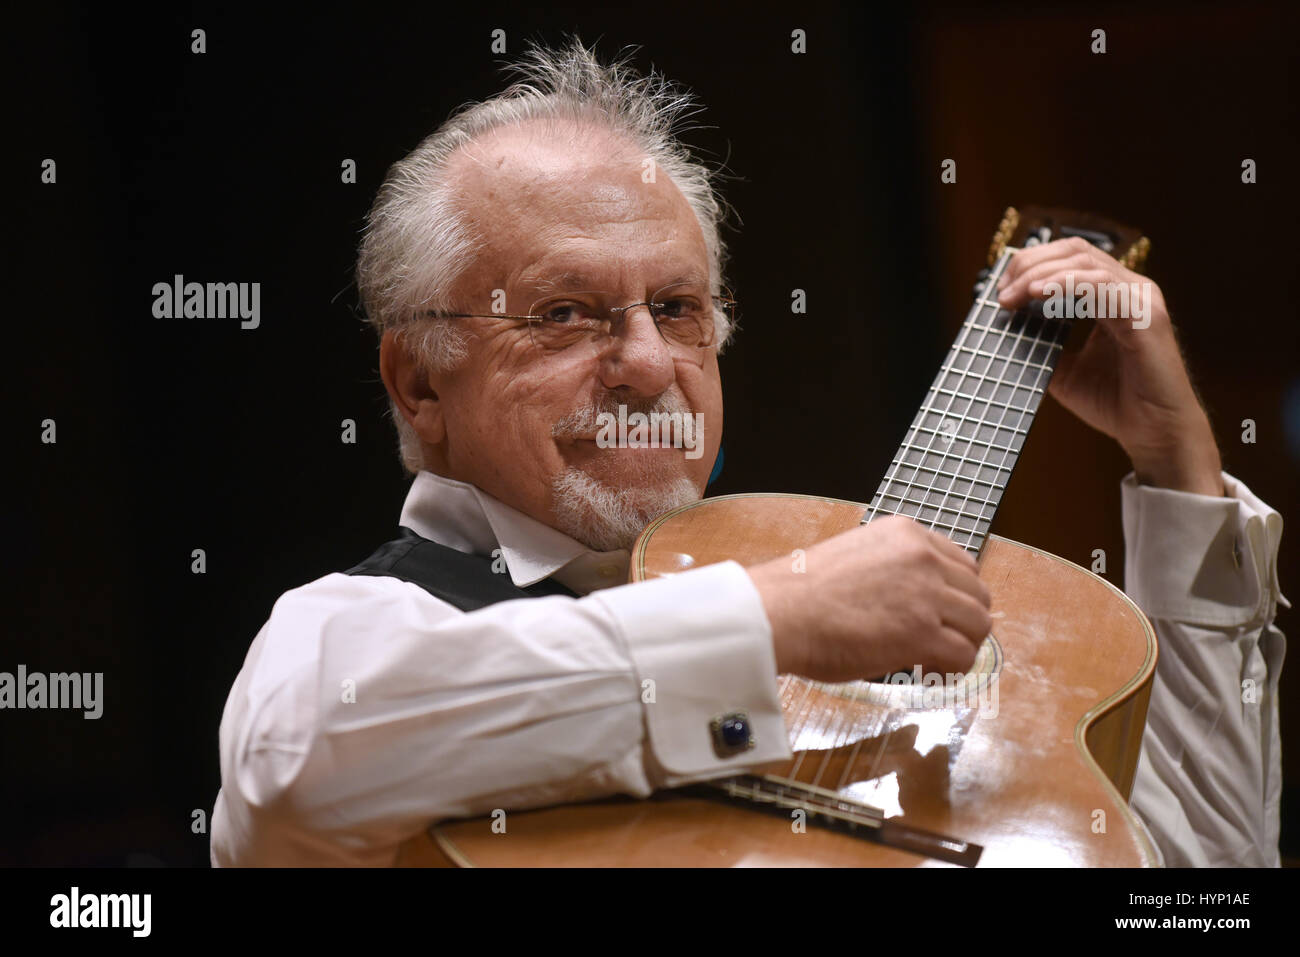 En Dusseldorf, Alemania. 05 abr, 2017. El guitarrista español Pepe Romero  toca la guitarra en el escenario durante una prueba de sonido en la  Tonhalle en Düsseldorf, Alemania, 05 de abril de